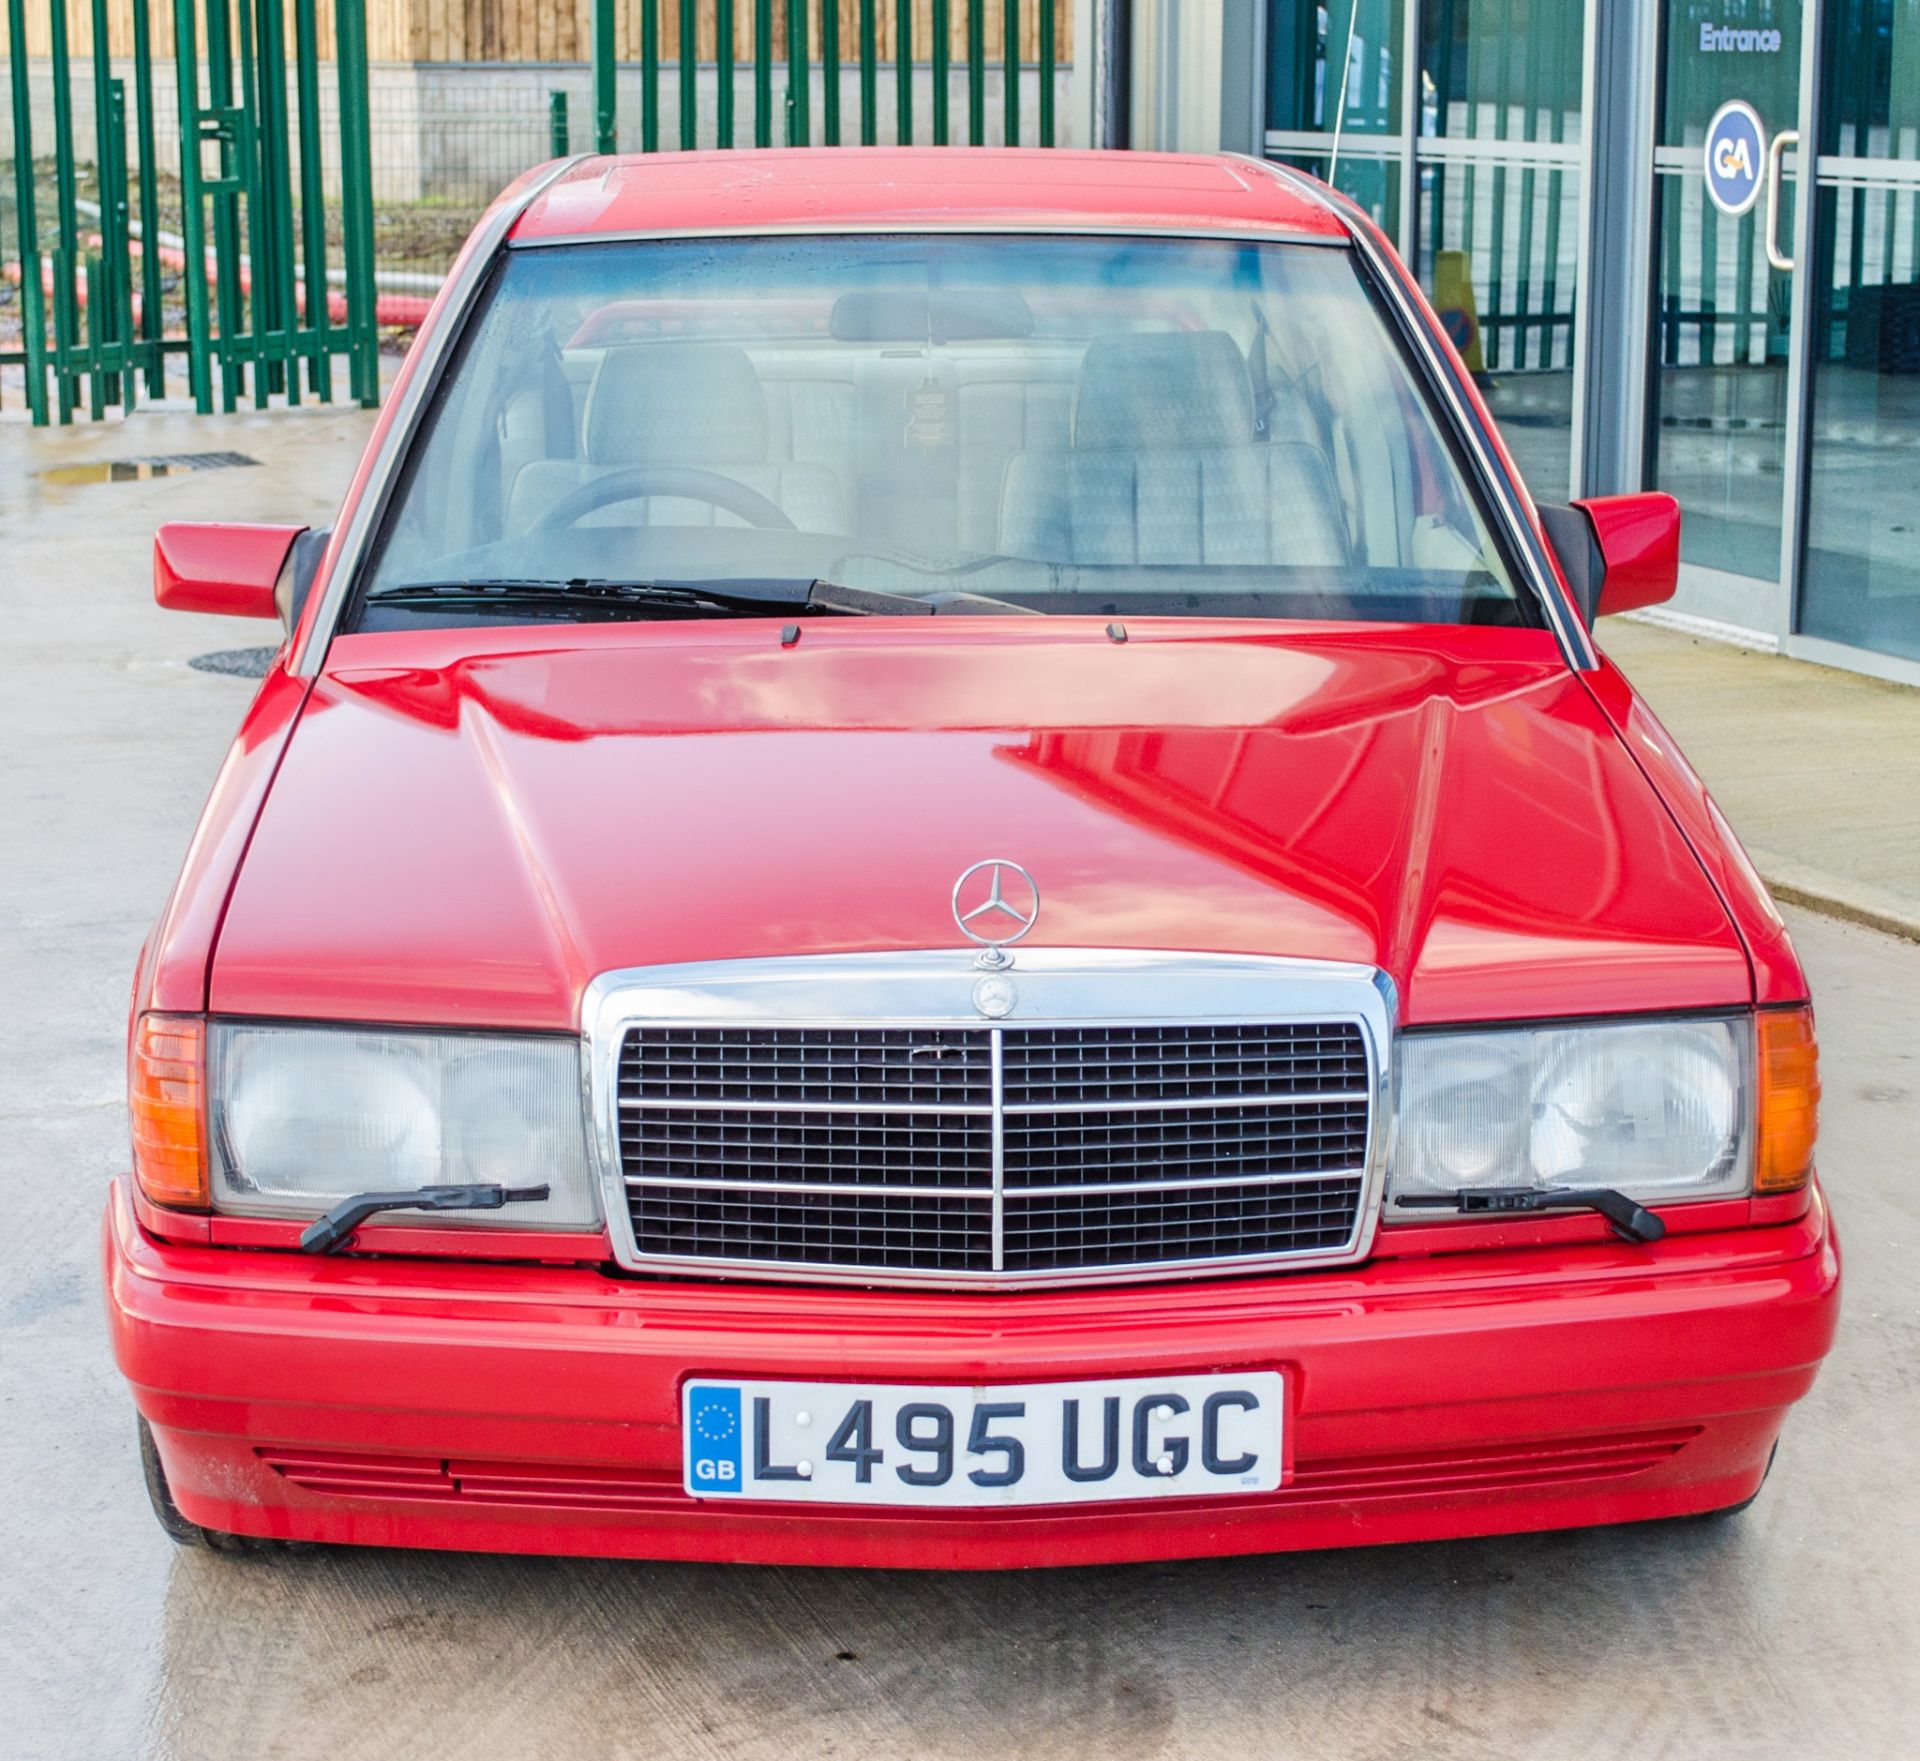 1993 Mercedes-Benz 190E 2.6 Litre 4 door salon - Image 10 of 52